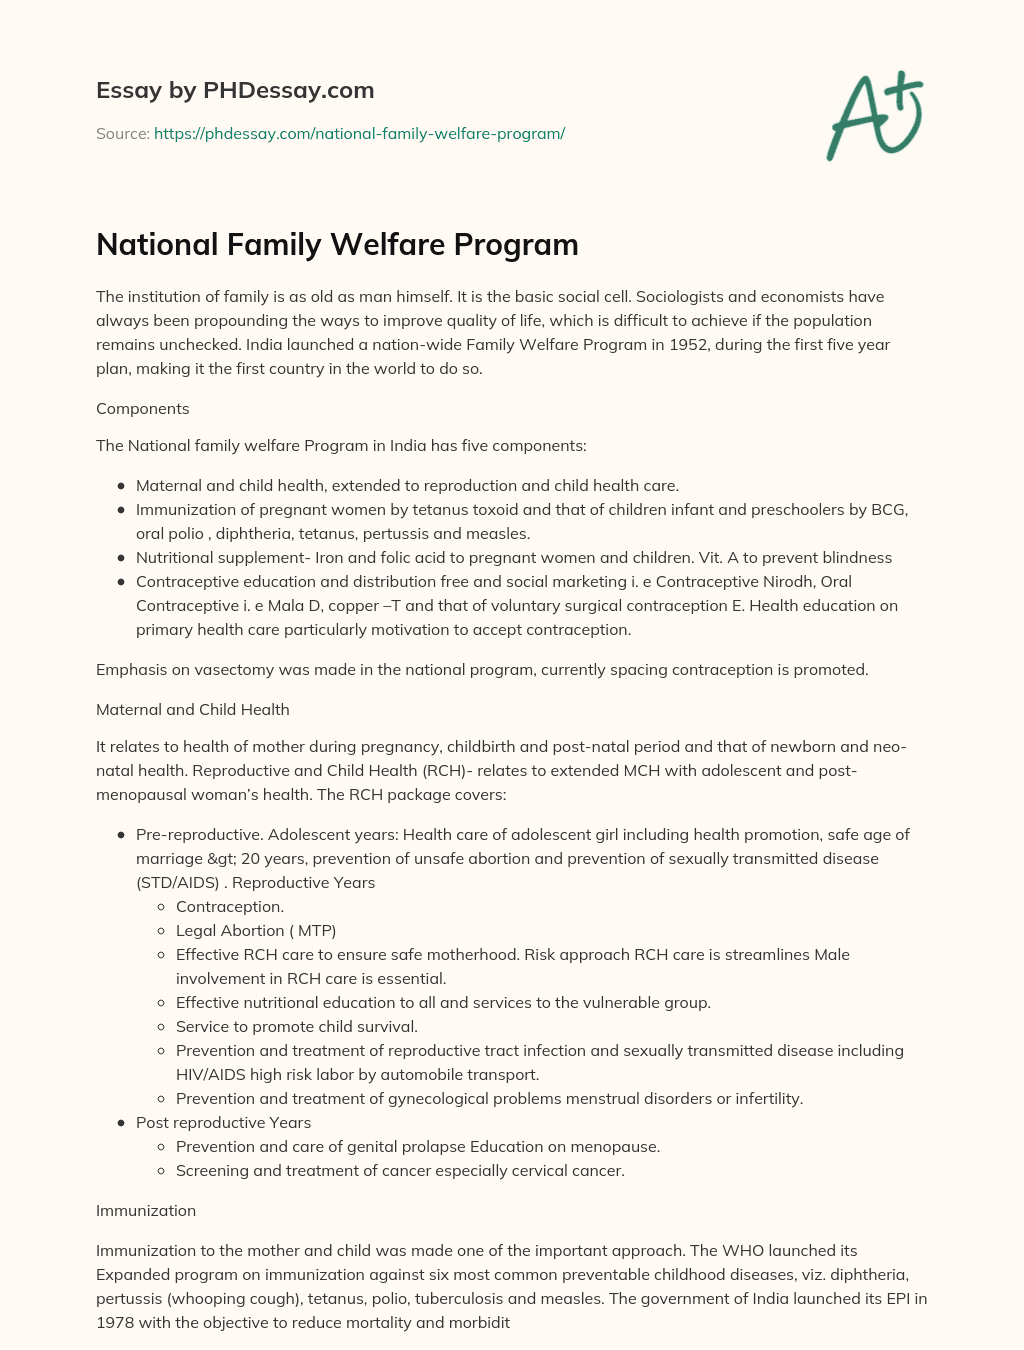 welfare club essay